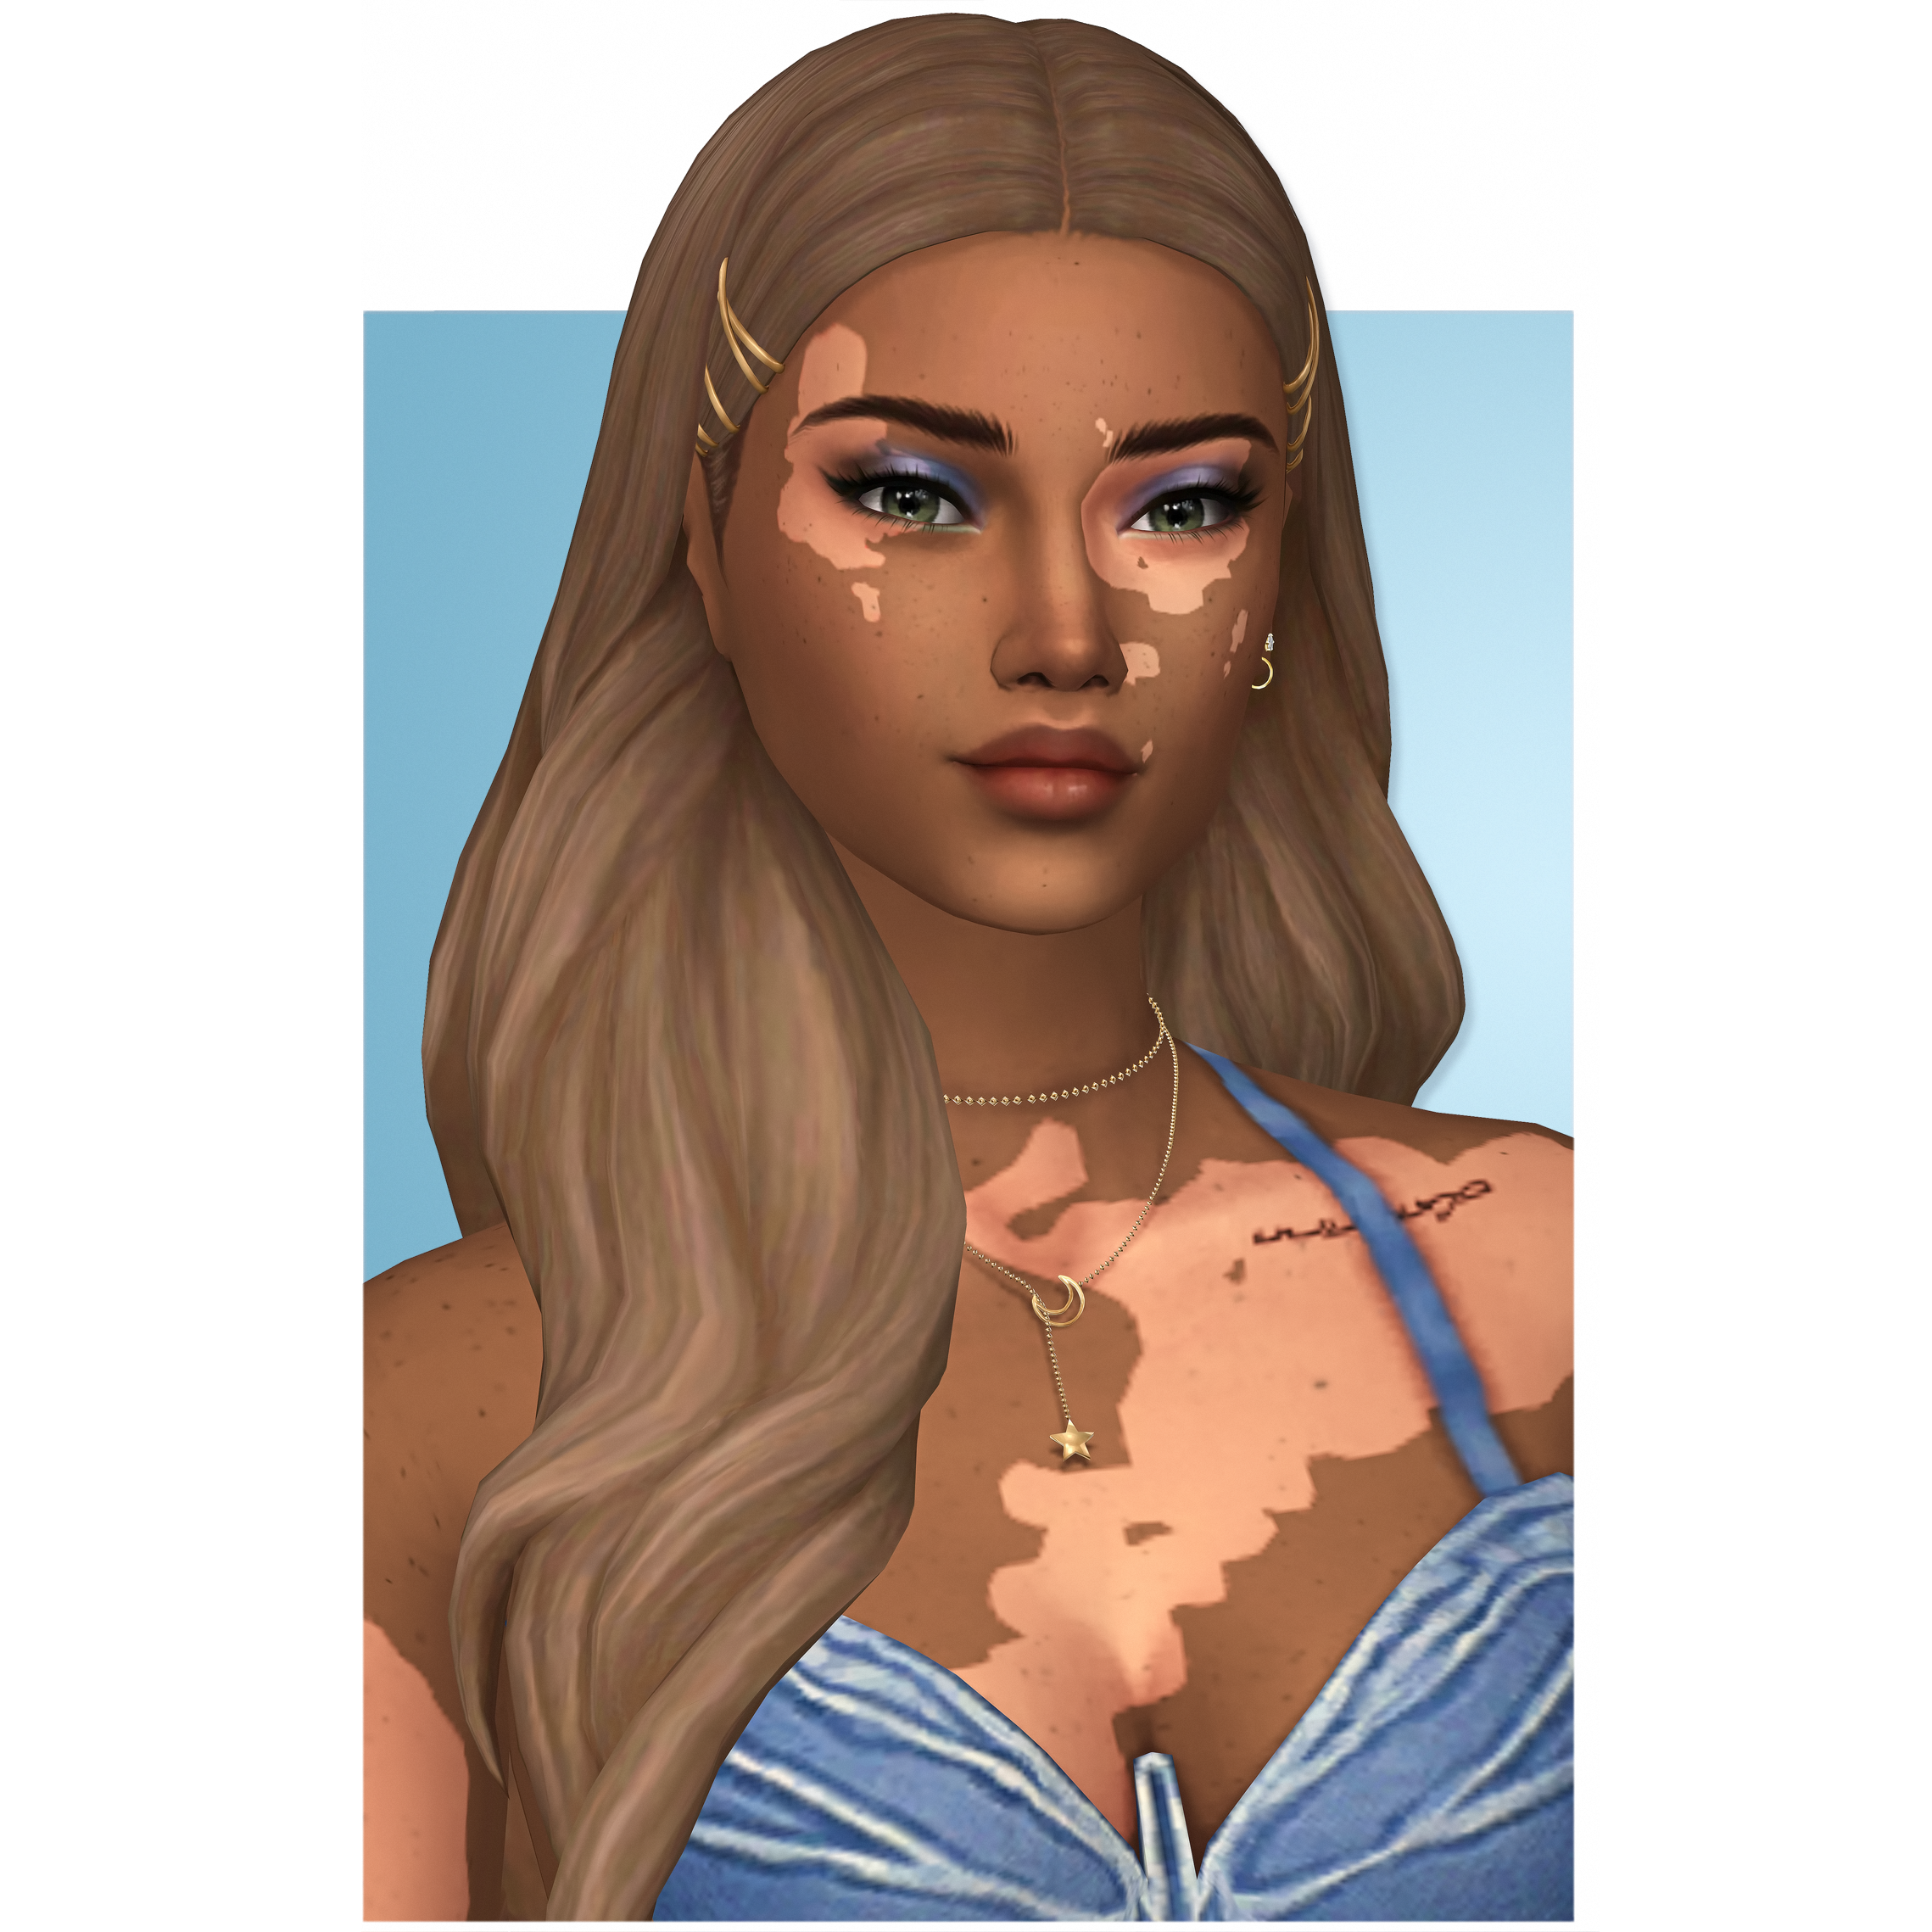 Simpliciaty's Jade Hair - The Sims 4 Create a Sim - CurseForge